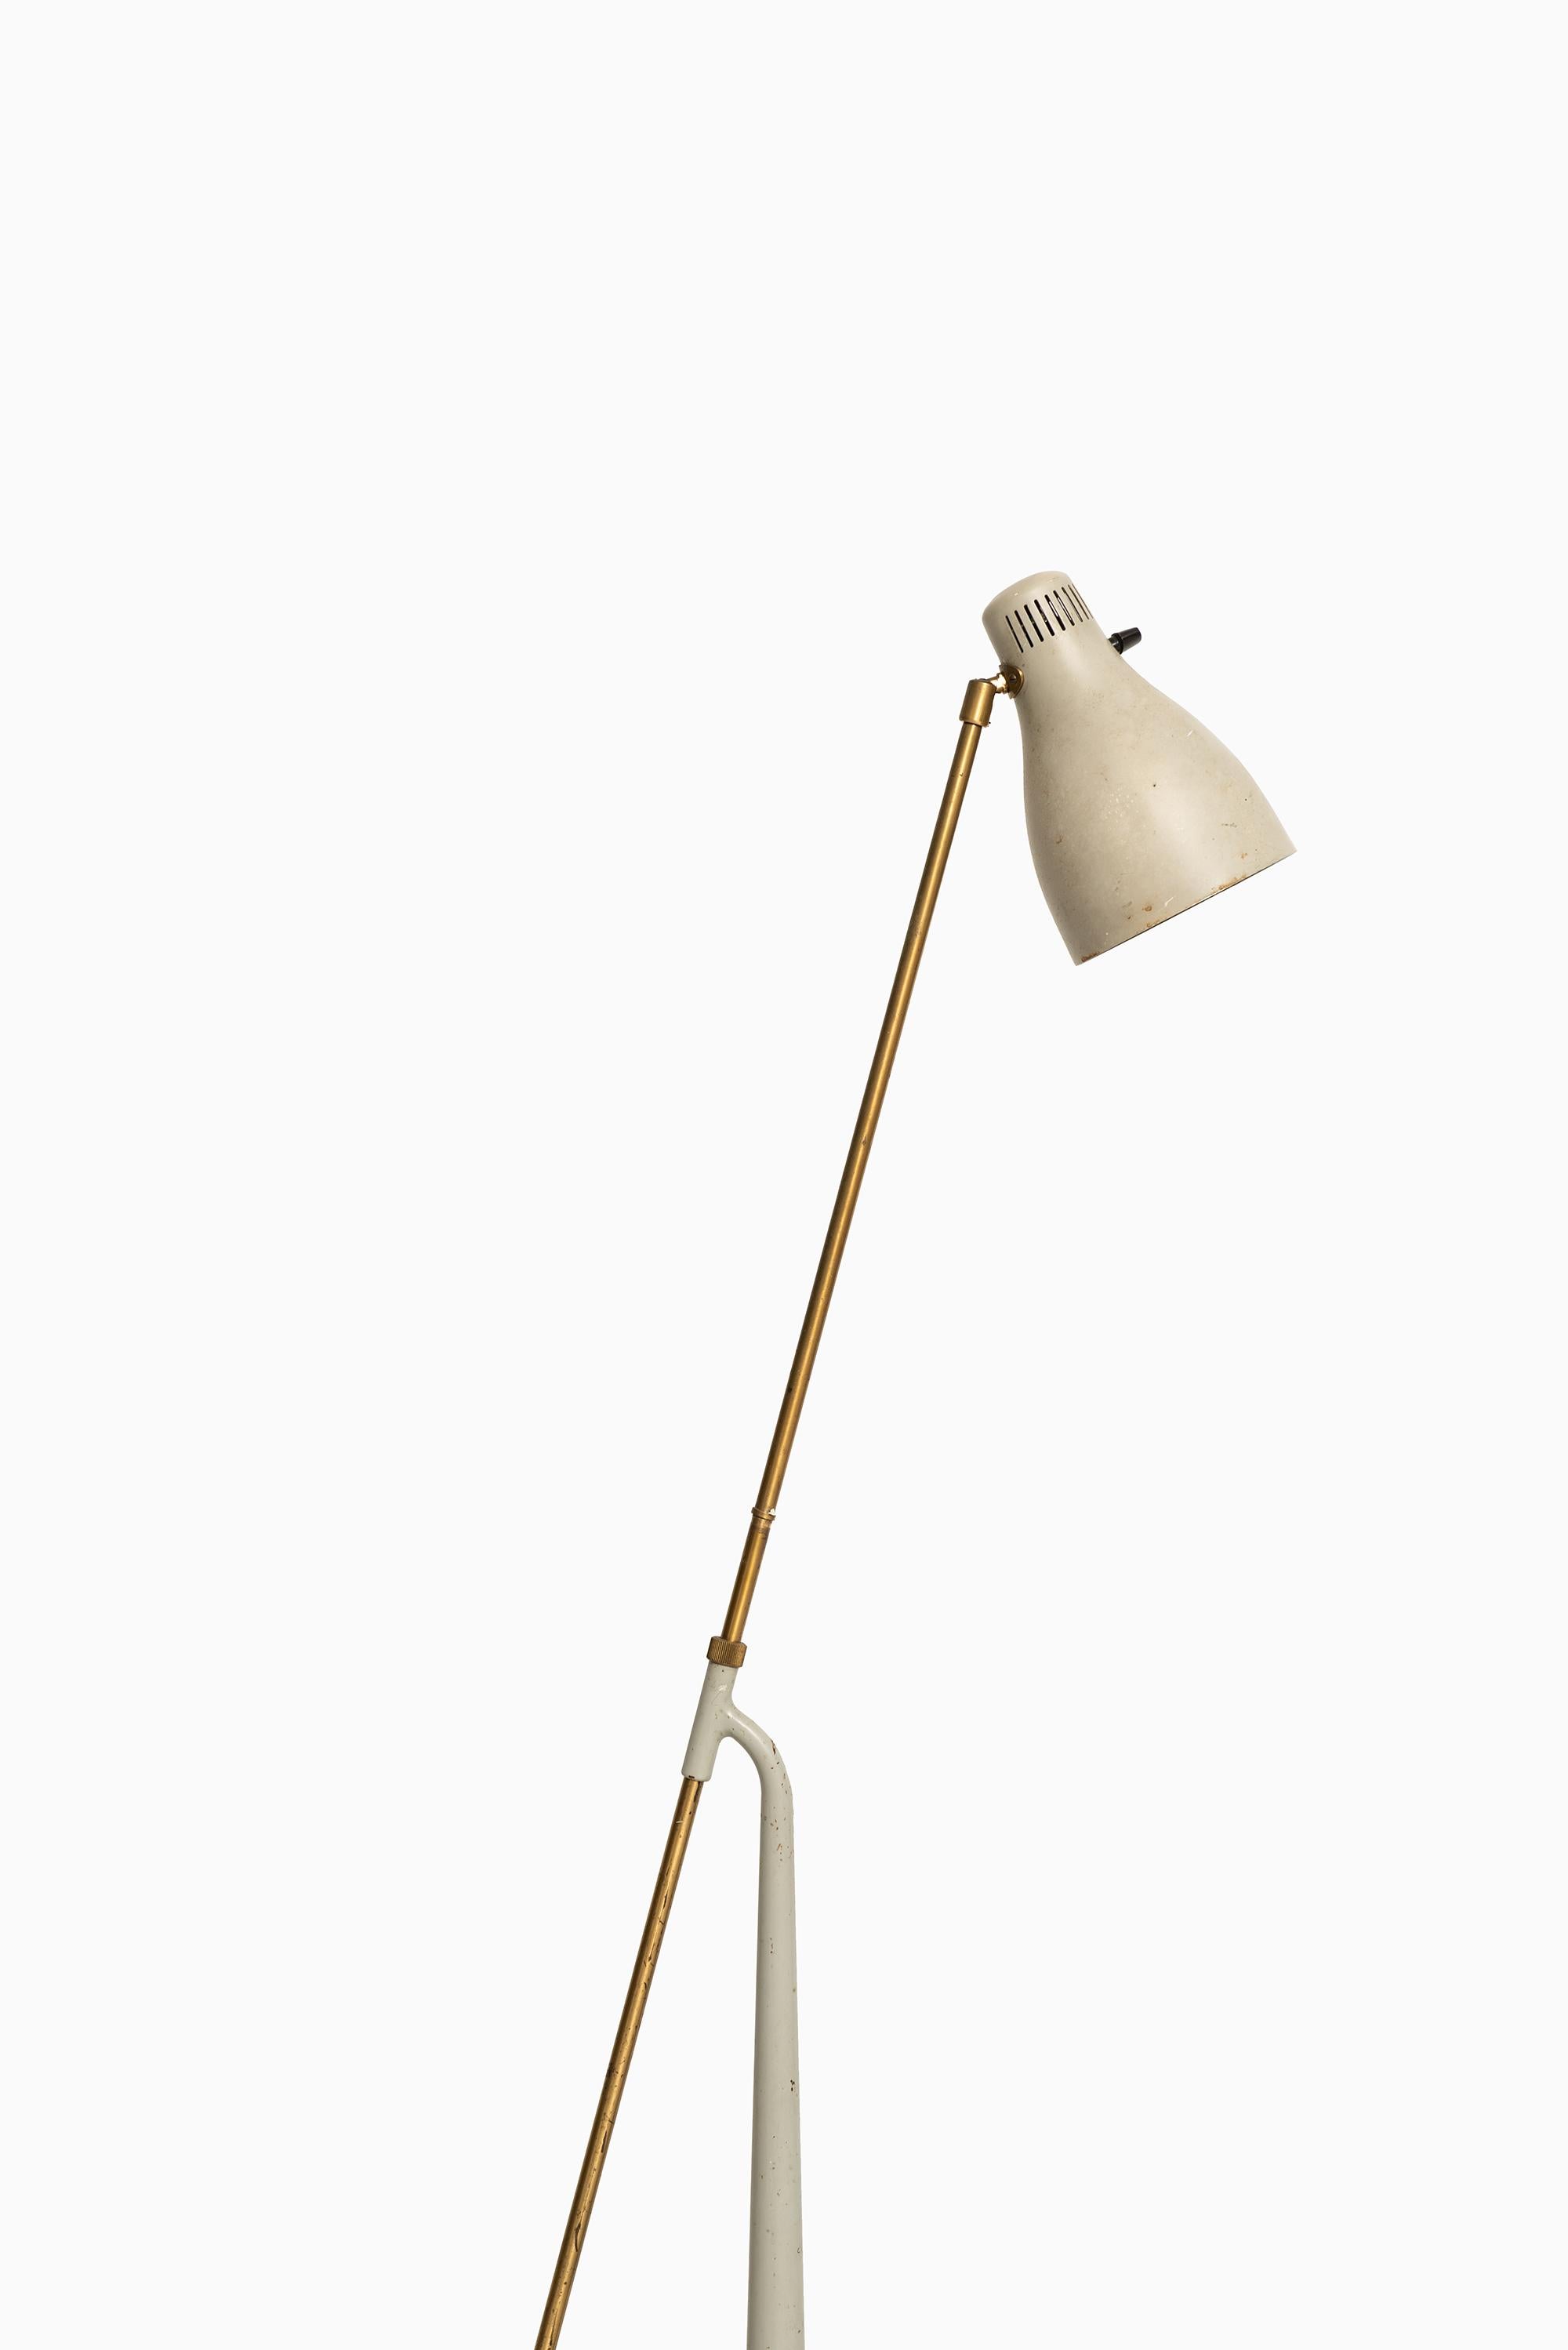 Rare lampadaire réglable en hauteur modèle 541 conçu par Hans Bergström. Produit par Ateljé Lyktan à Åhus, Suède.